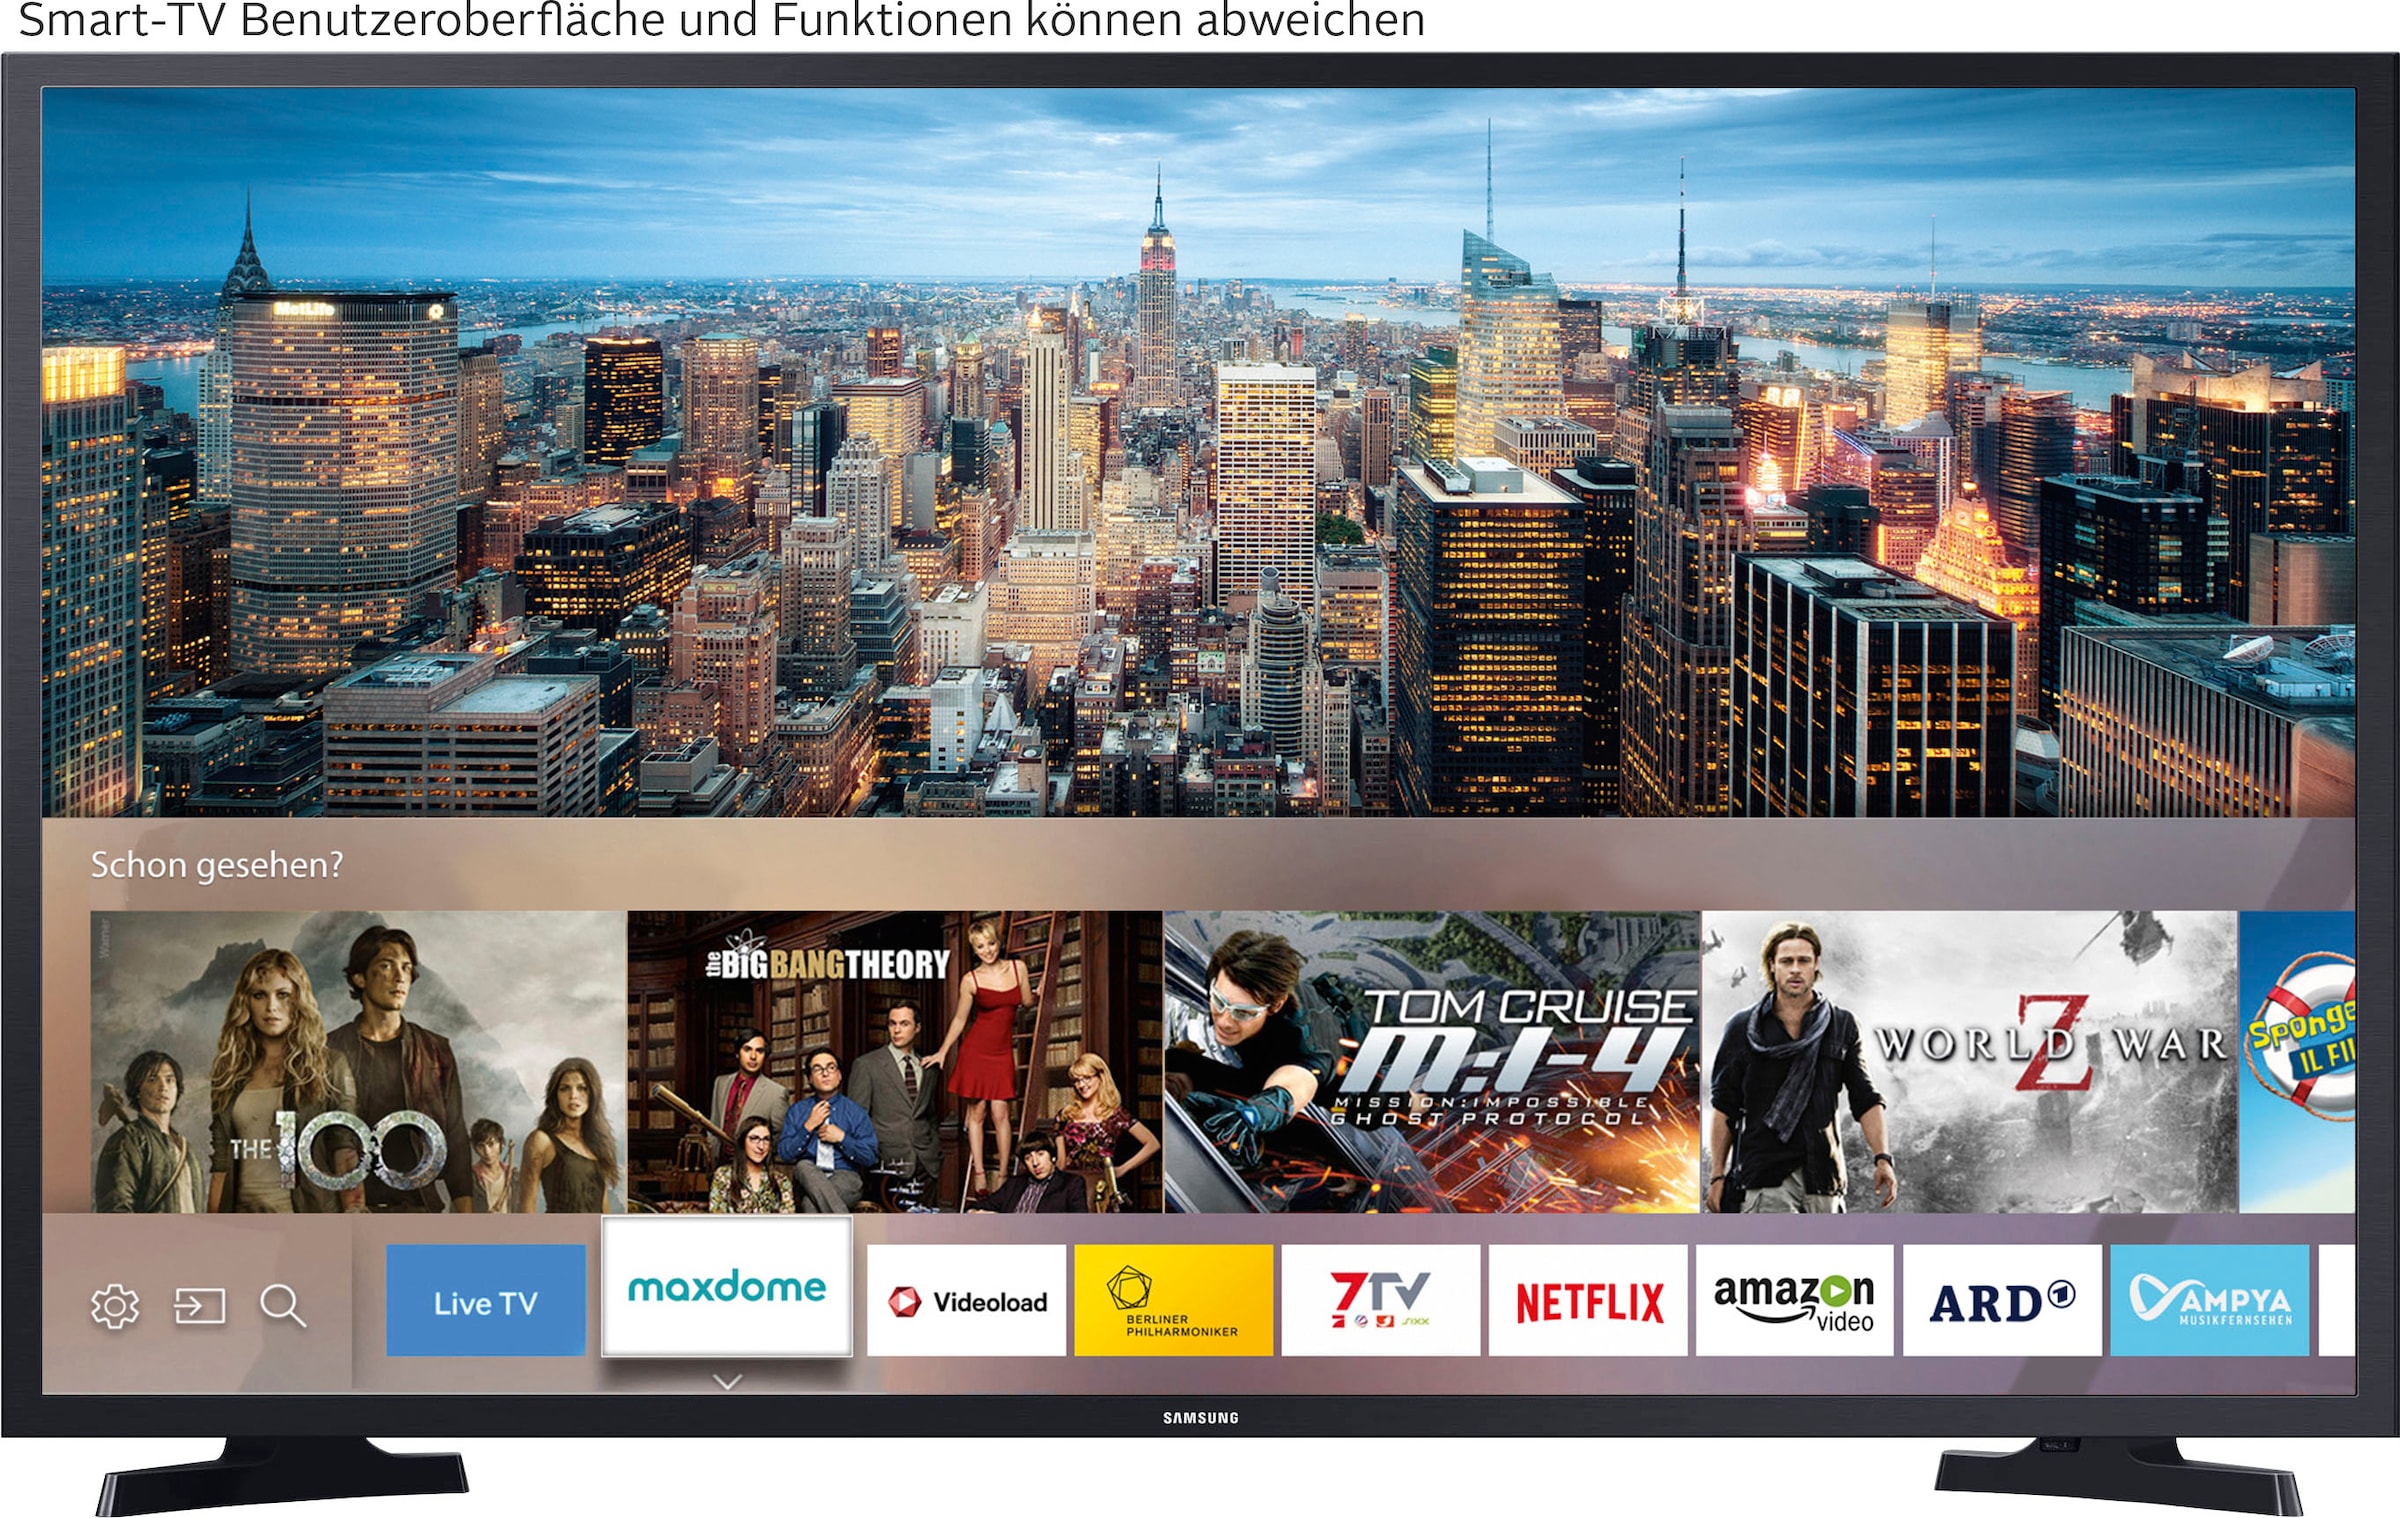 Samsung LED-Fernseher, 80 cm/32 Zoll, Smart-TV, | PurColor,HDR,Contrast BAUR Enhancer